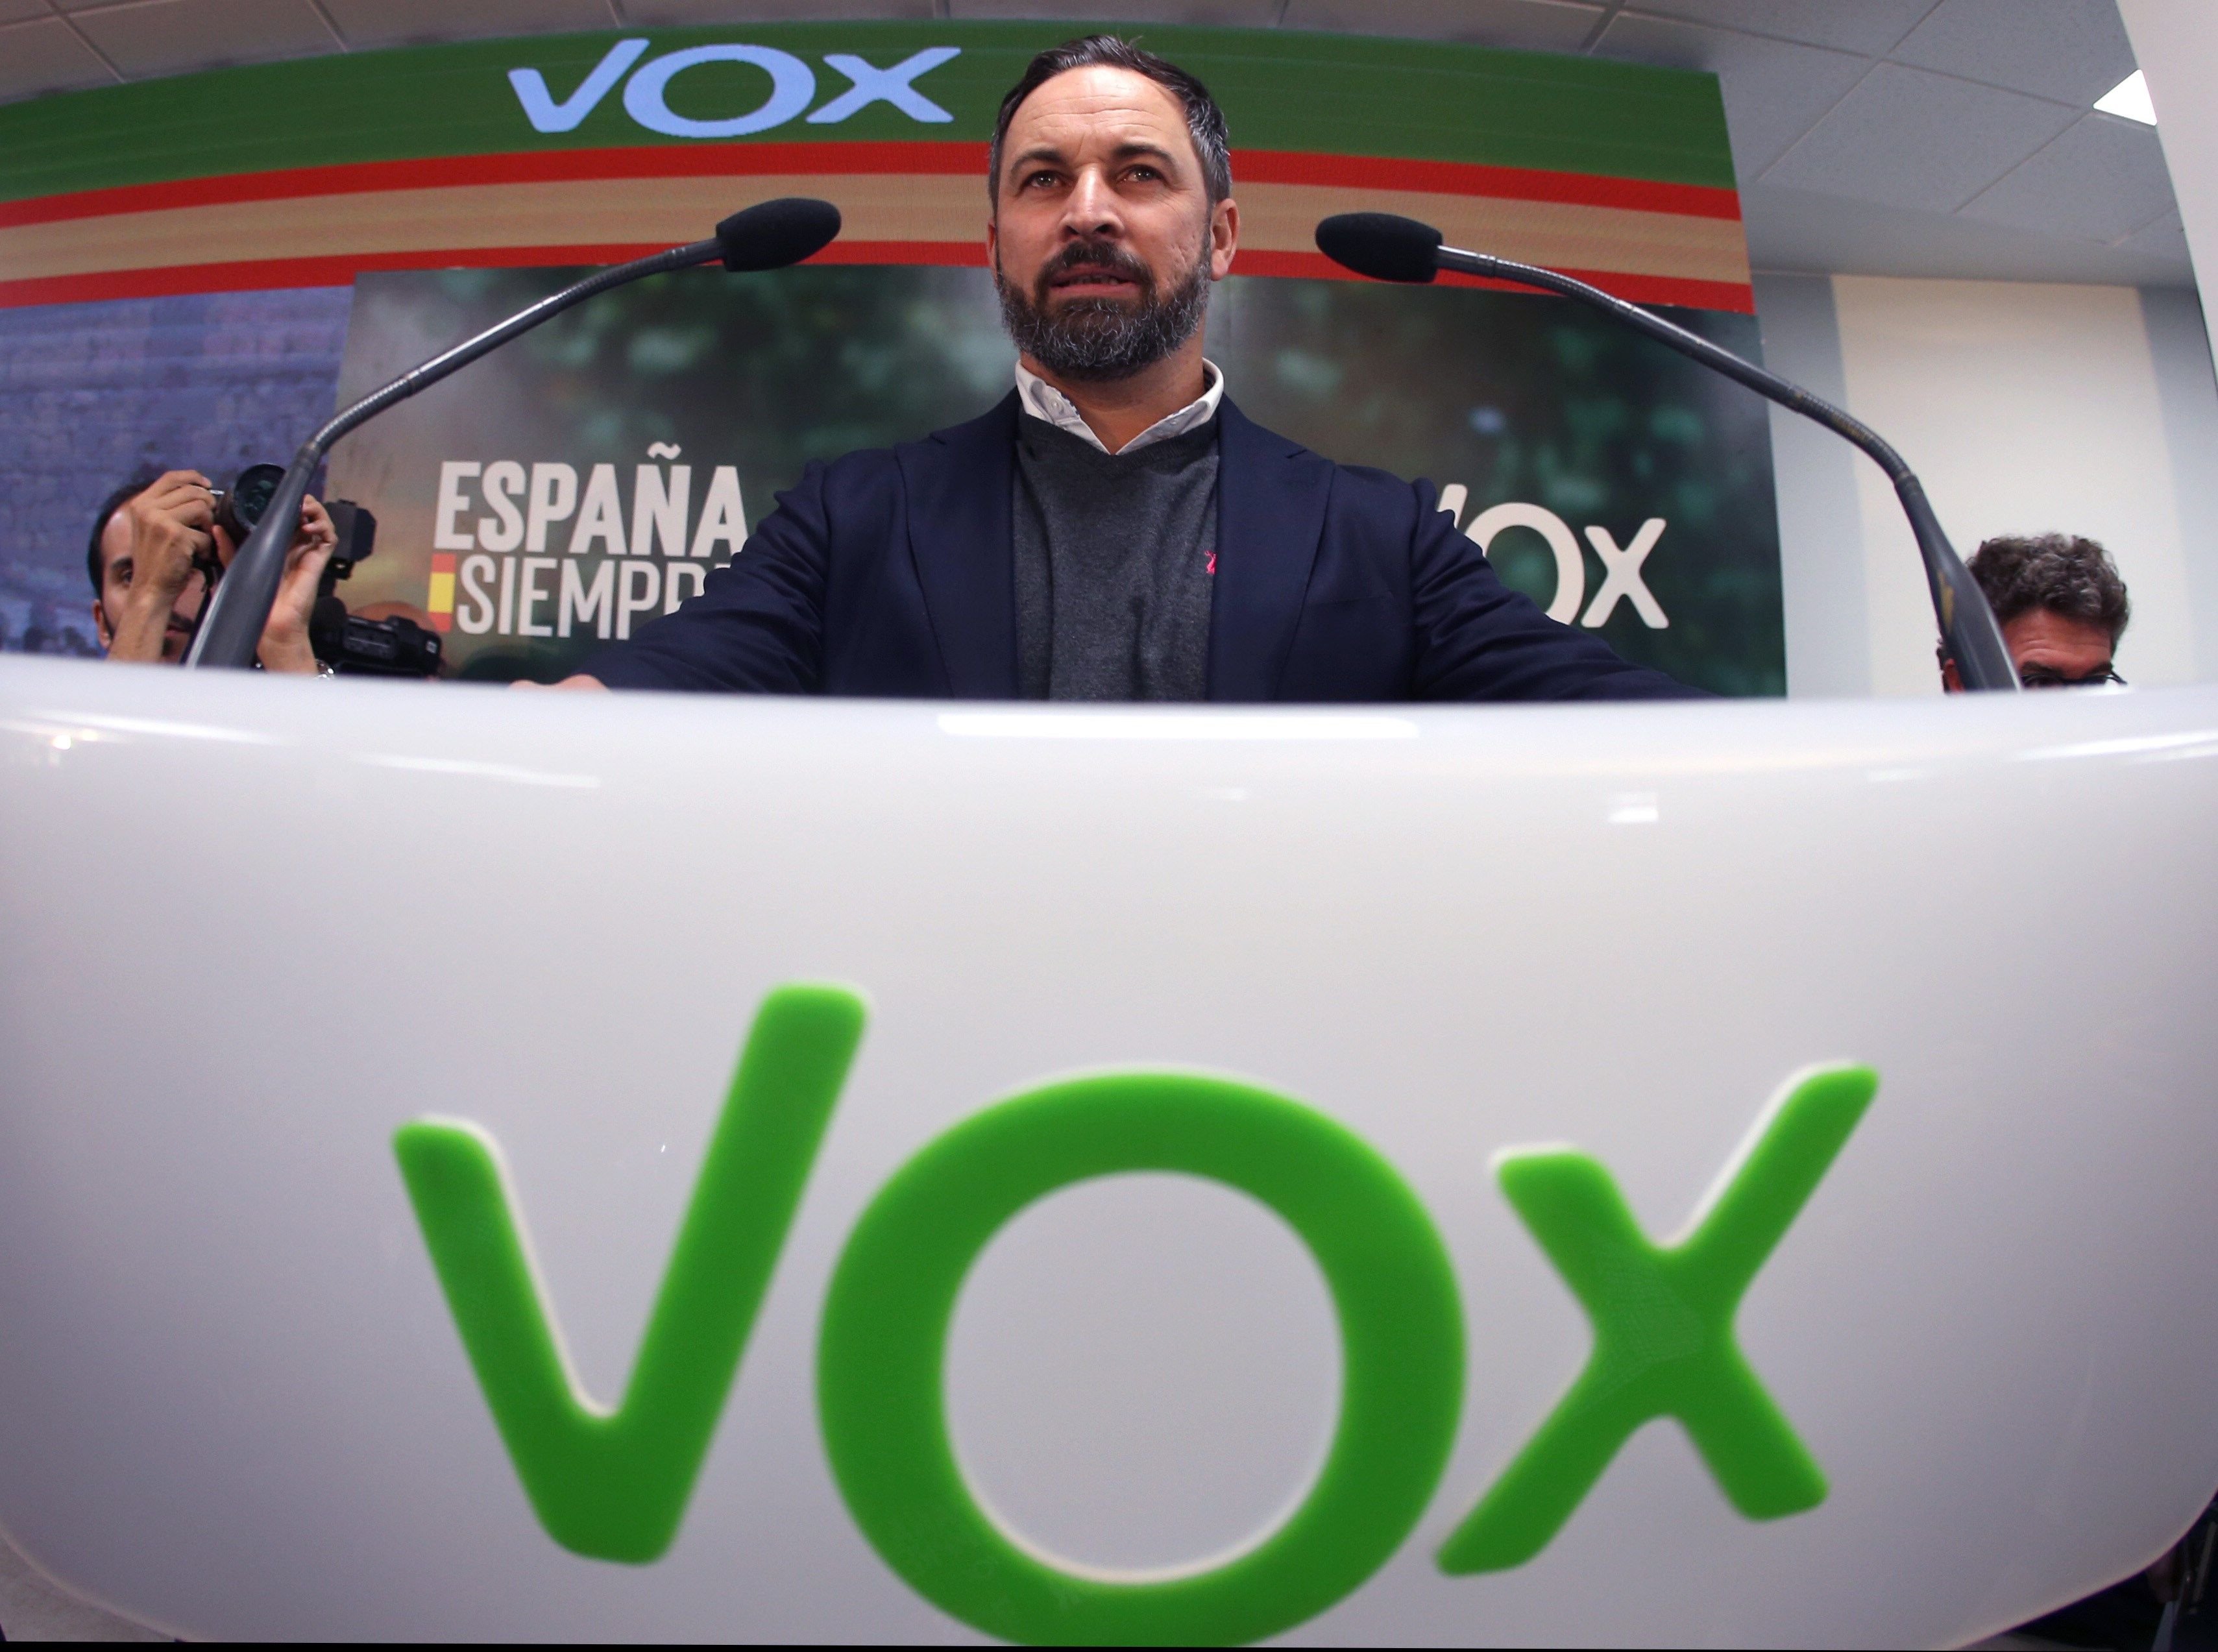 El diari oficial del Vaticà defineix Vox com un partit "d'extrema dreta"